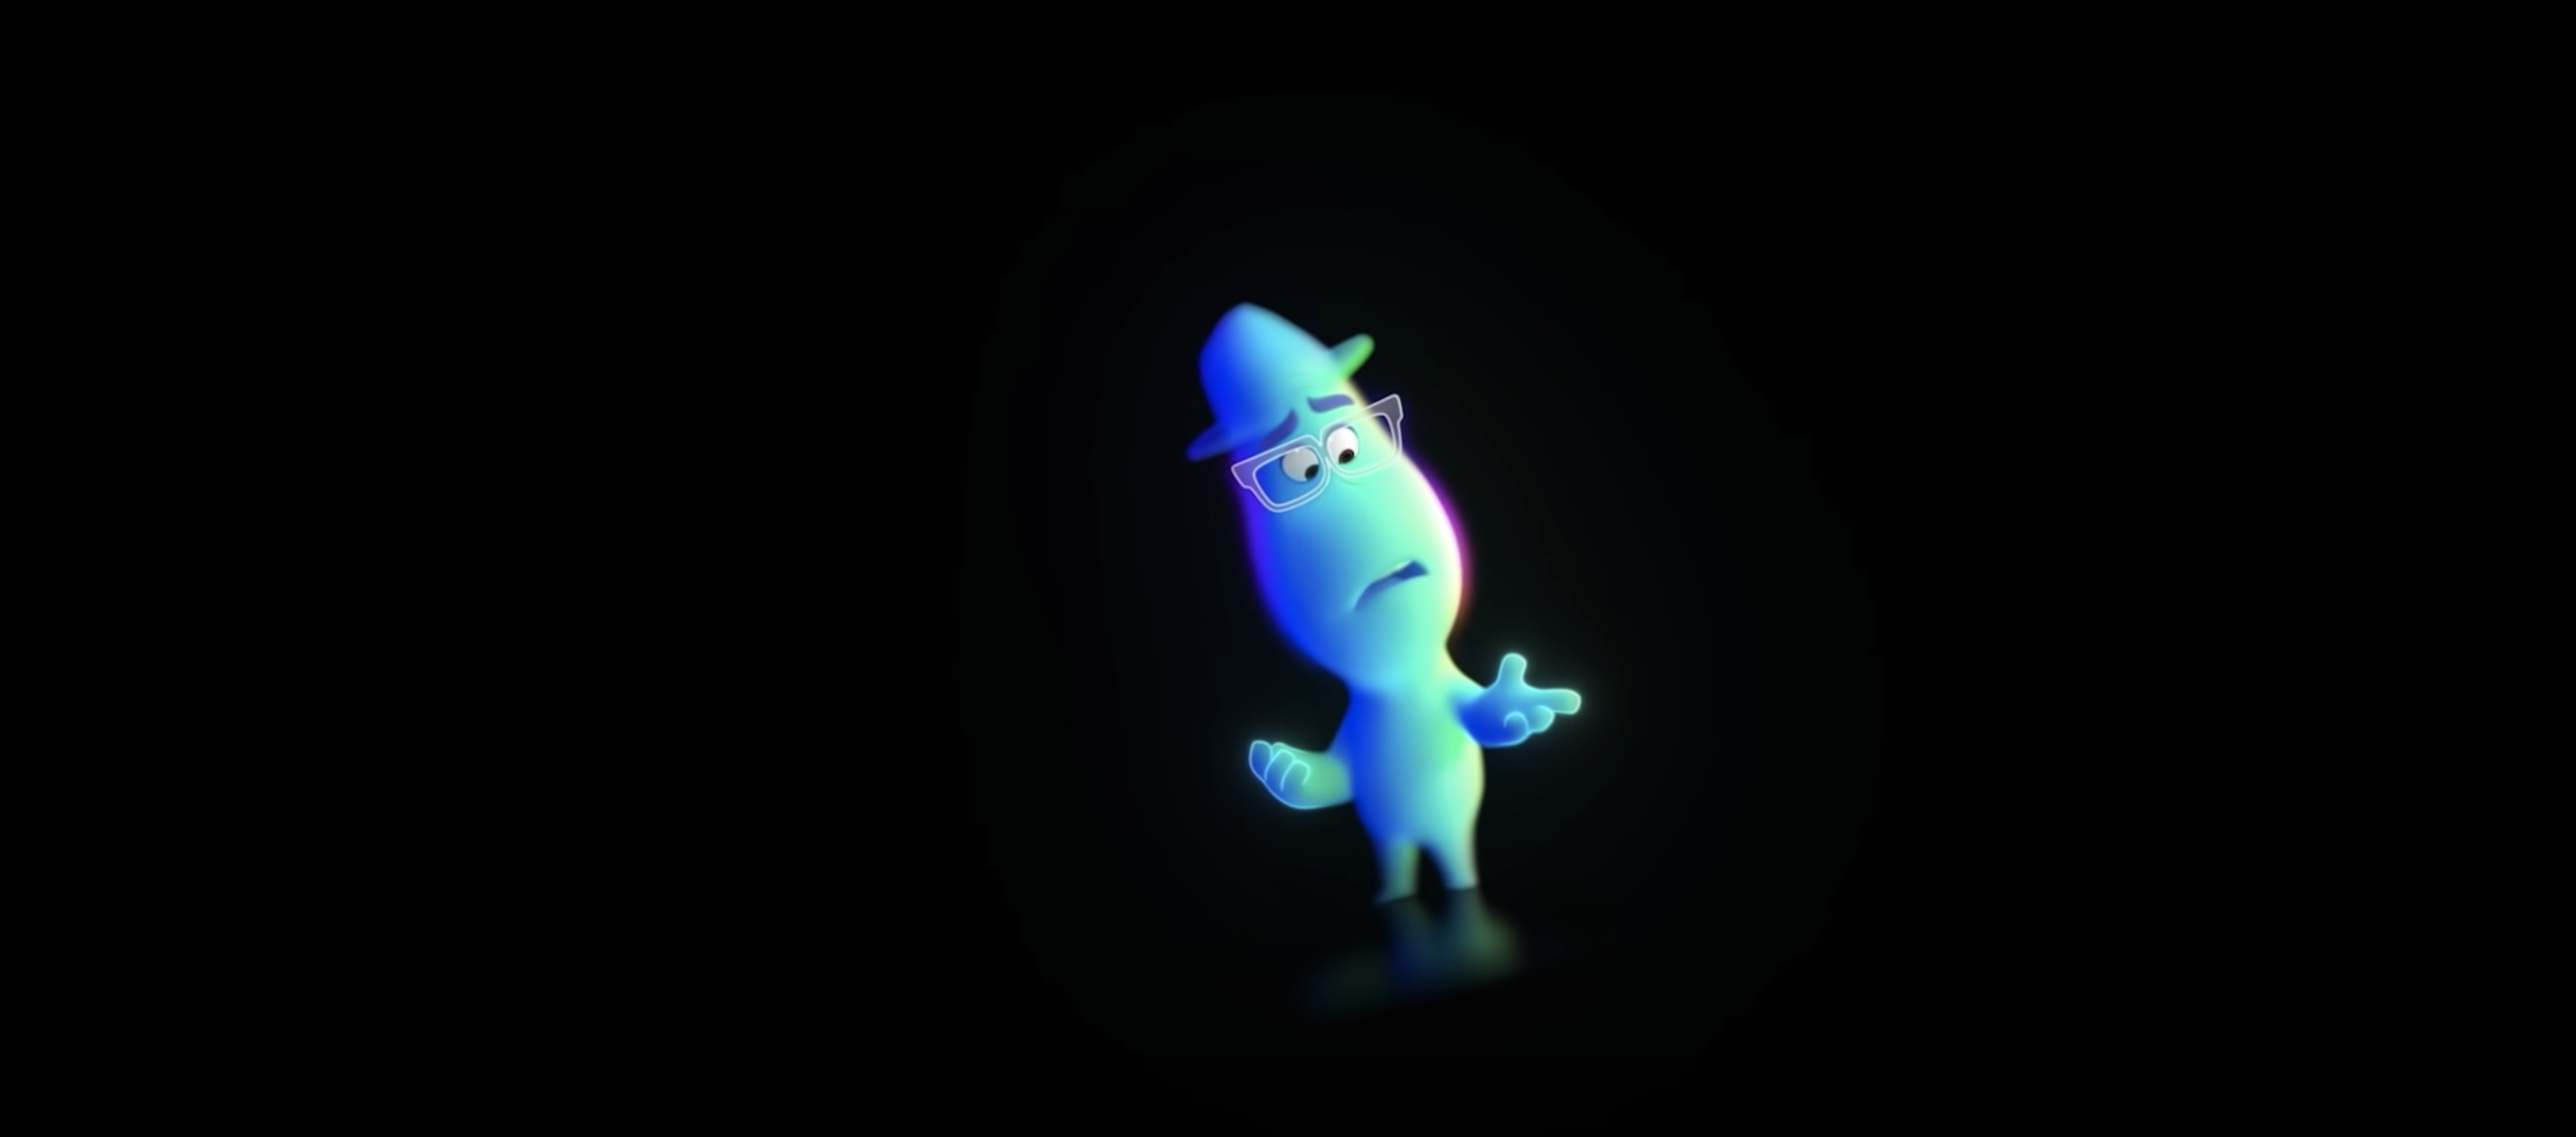 Trailer for Pixar's Soul